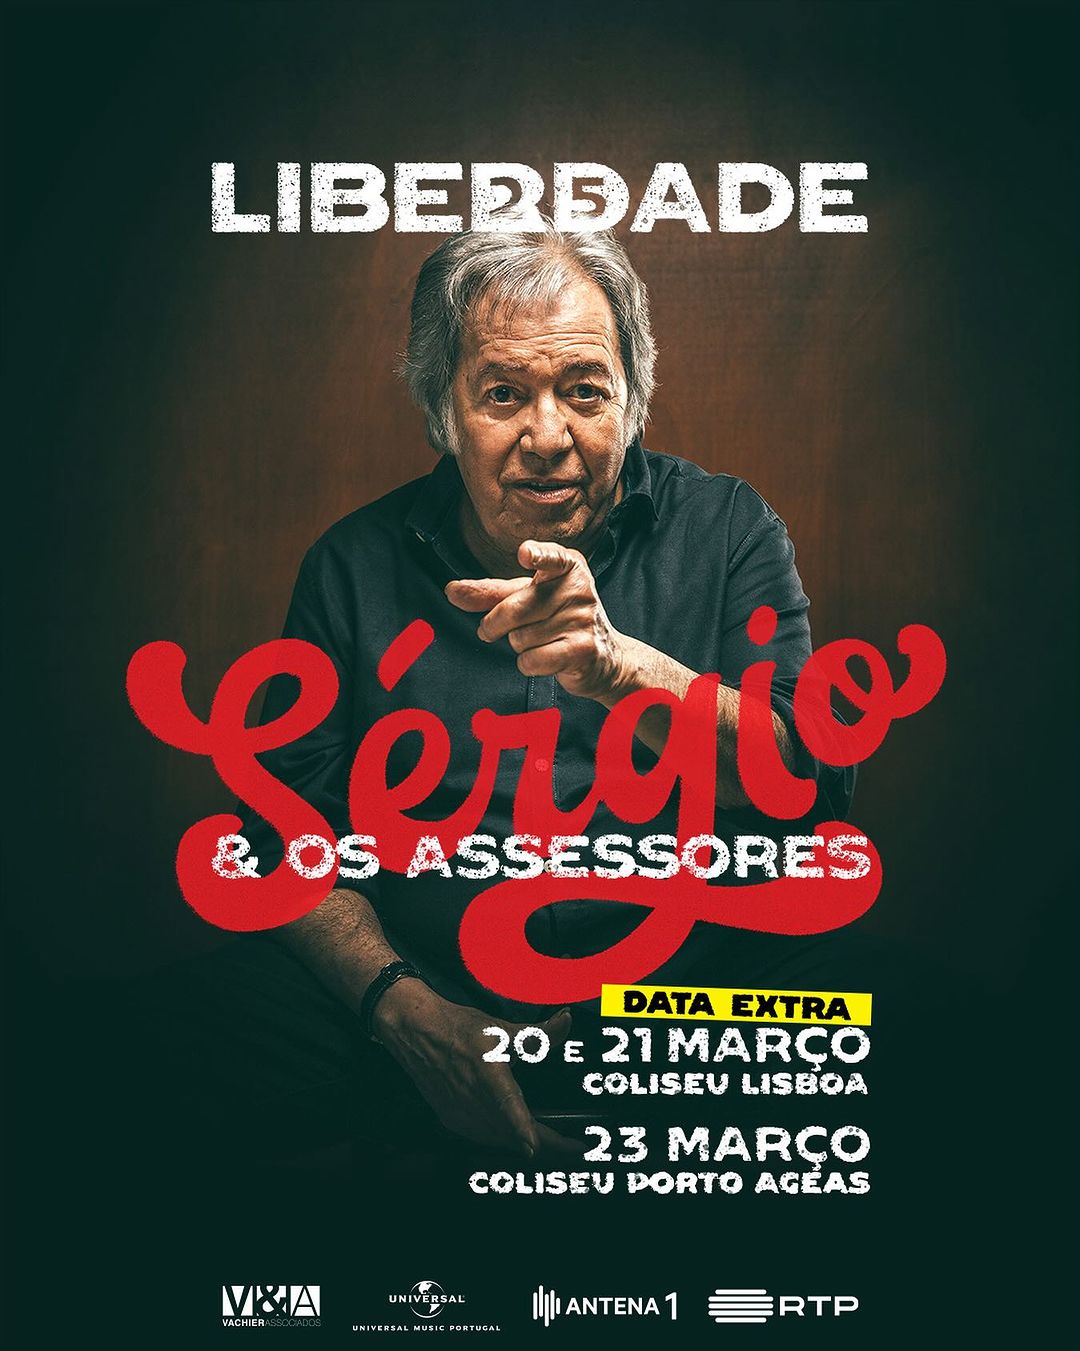 Sérgio Godinho Returns to the Coliseums with “Liberdade25”